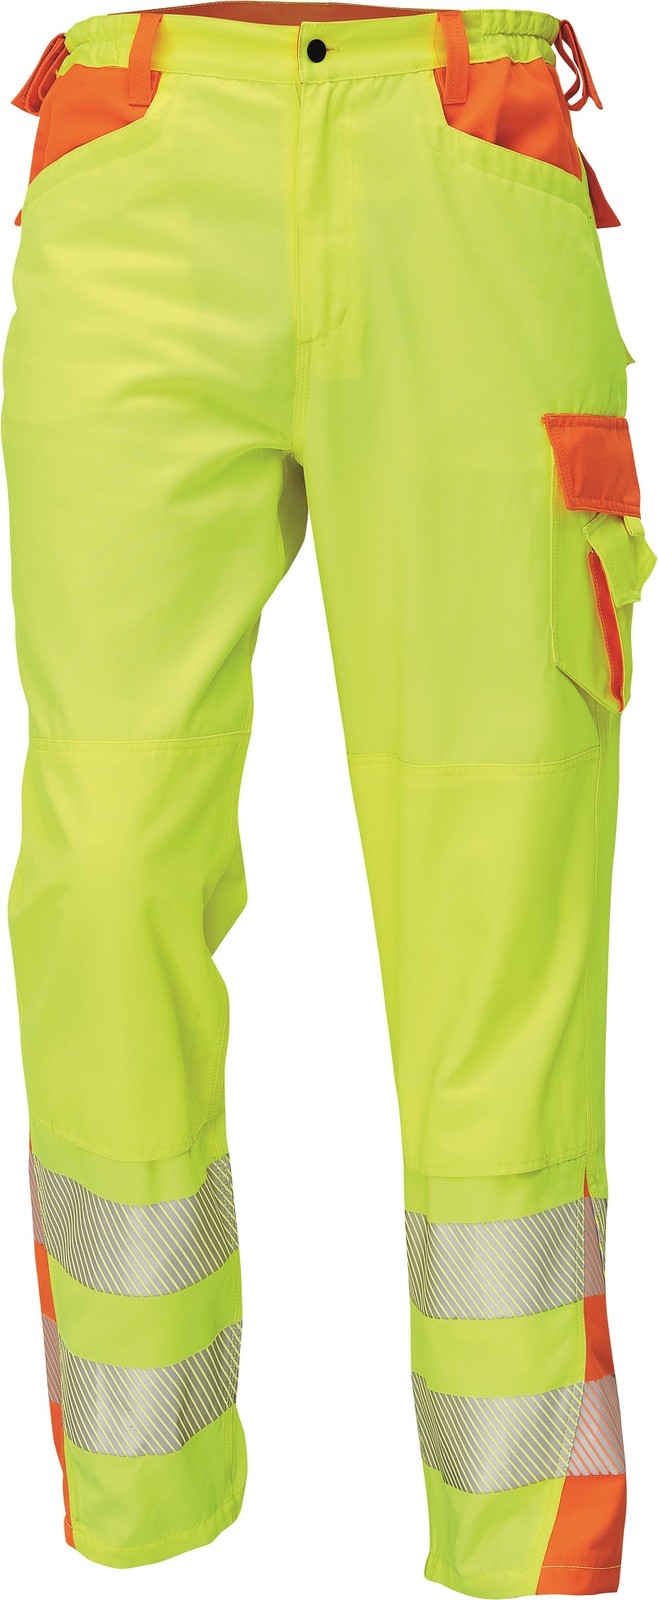 Reflexné pracovné nohavice Cerva Latton - veľkosť: 56, farba: žltá/oranžová